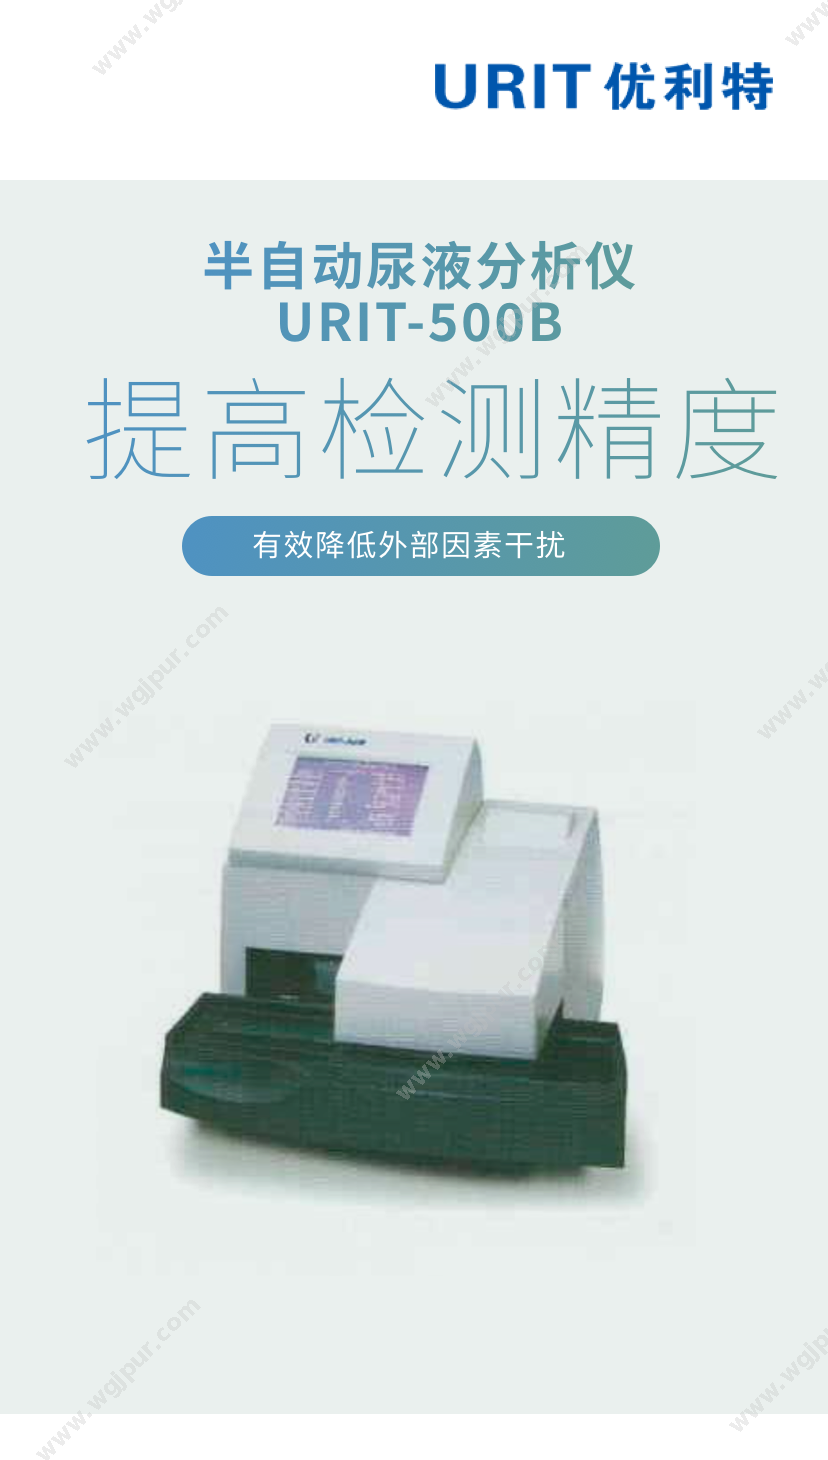 优利特 URIT-500B 体外诊断